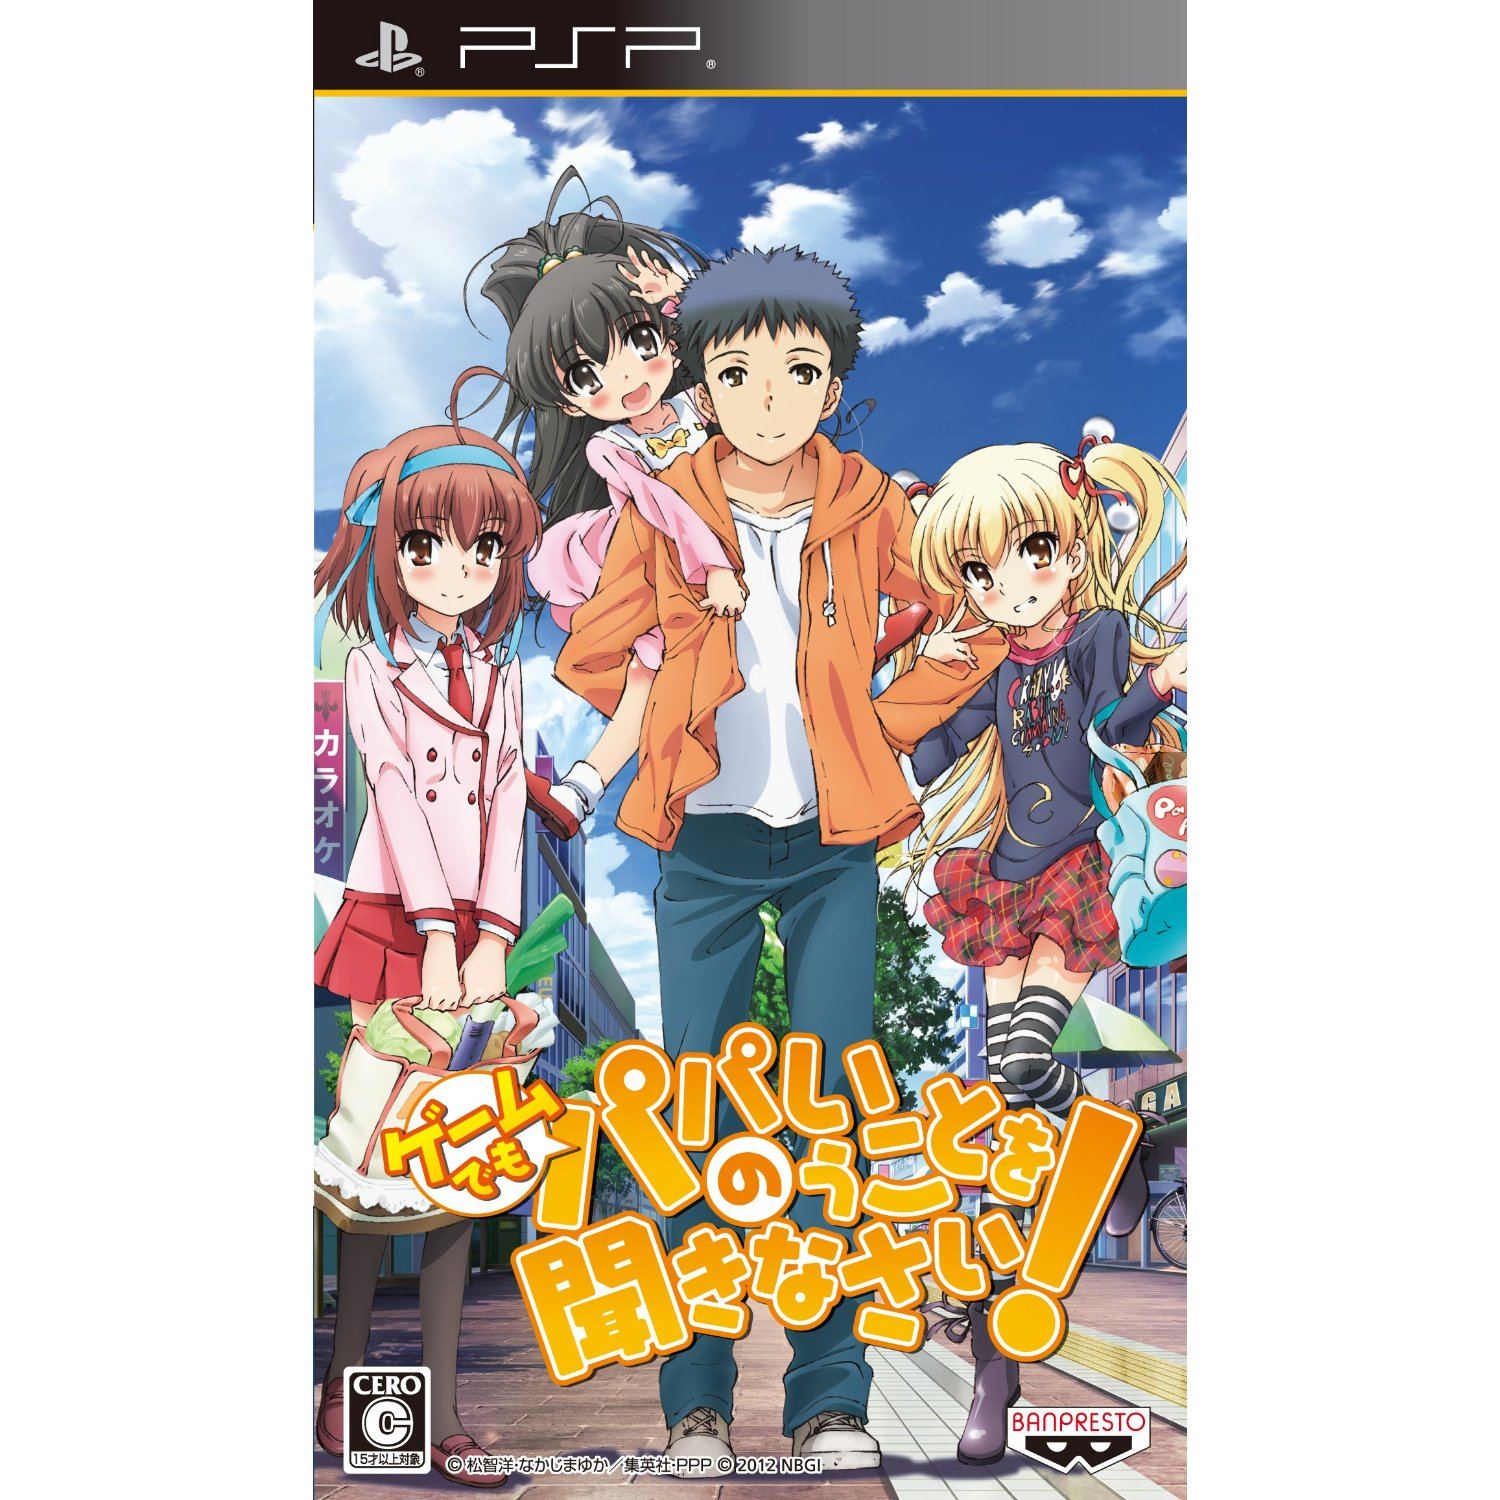 Densetsu no Yuusha no Densetsu: Legendary Saga (Kadokawa the Best) for Sony  PSP